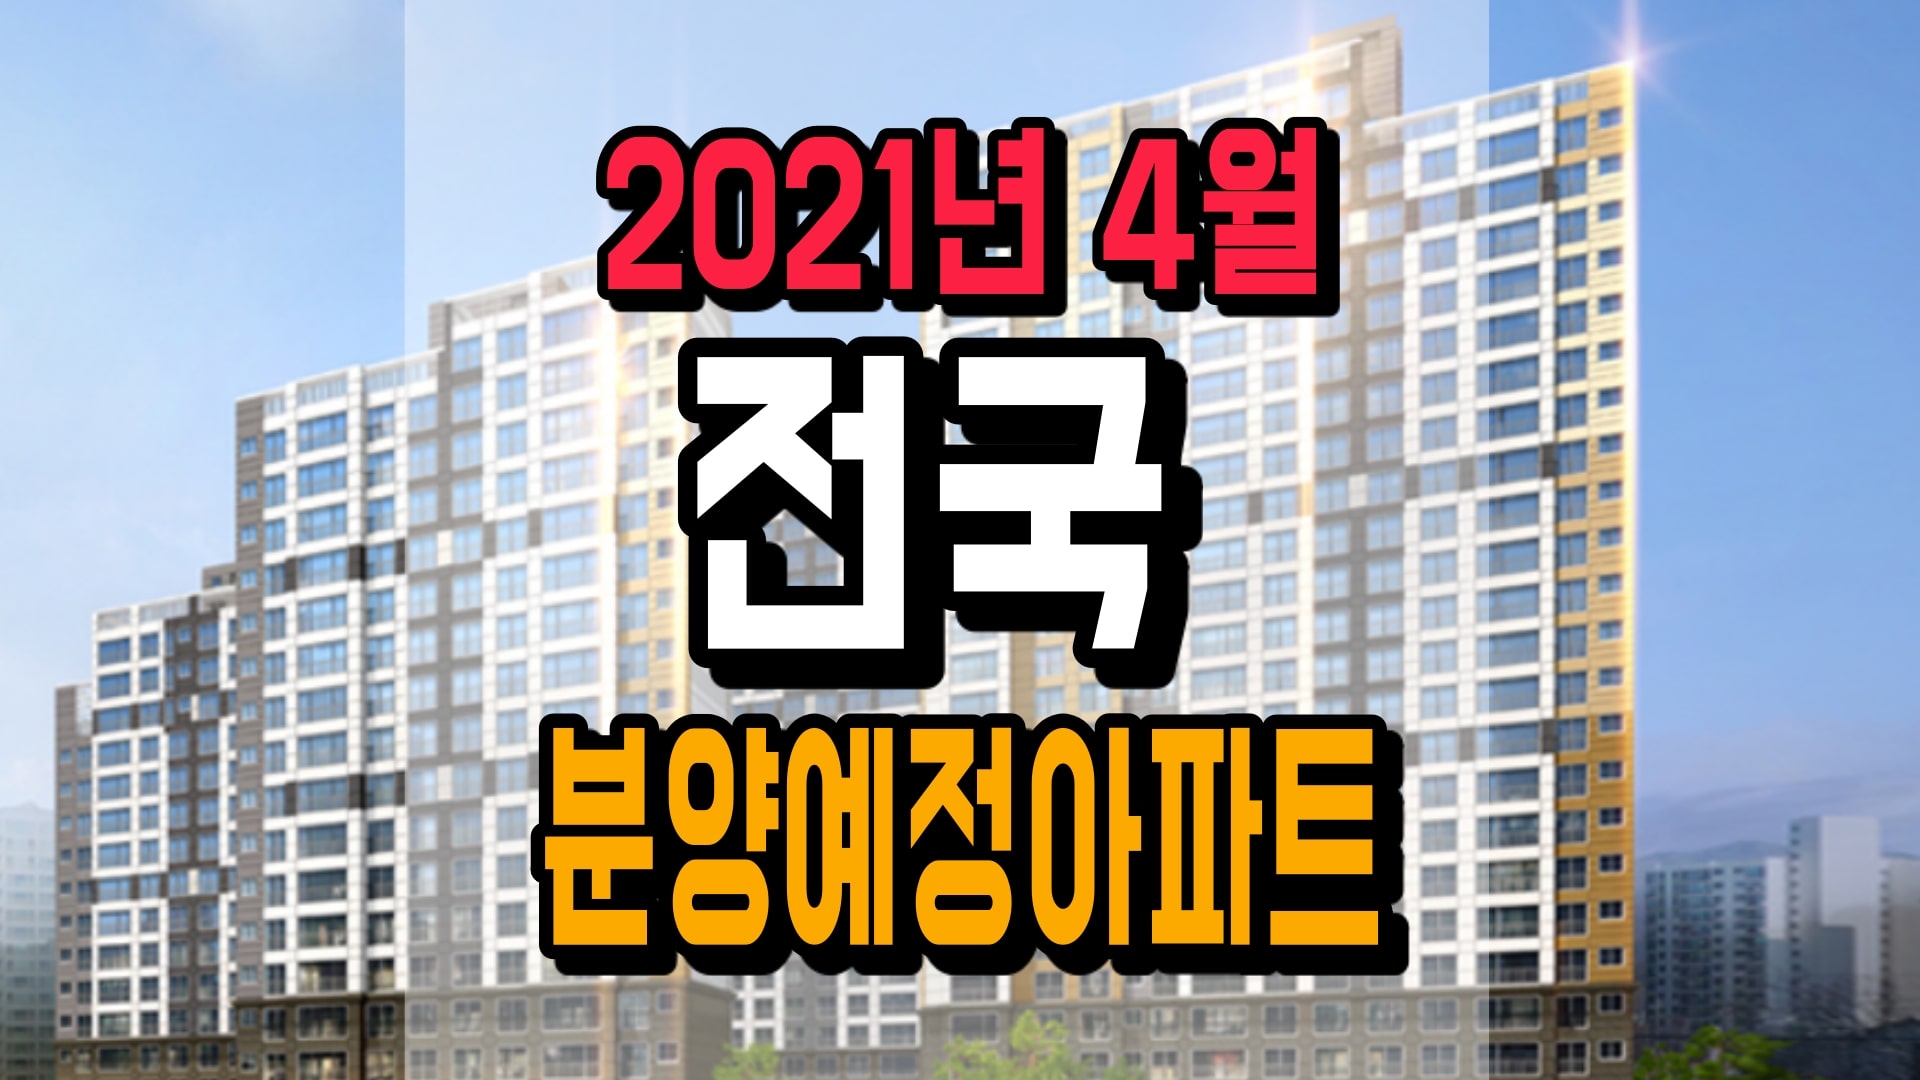 2021년-4월 -전국-분양예정-아파트